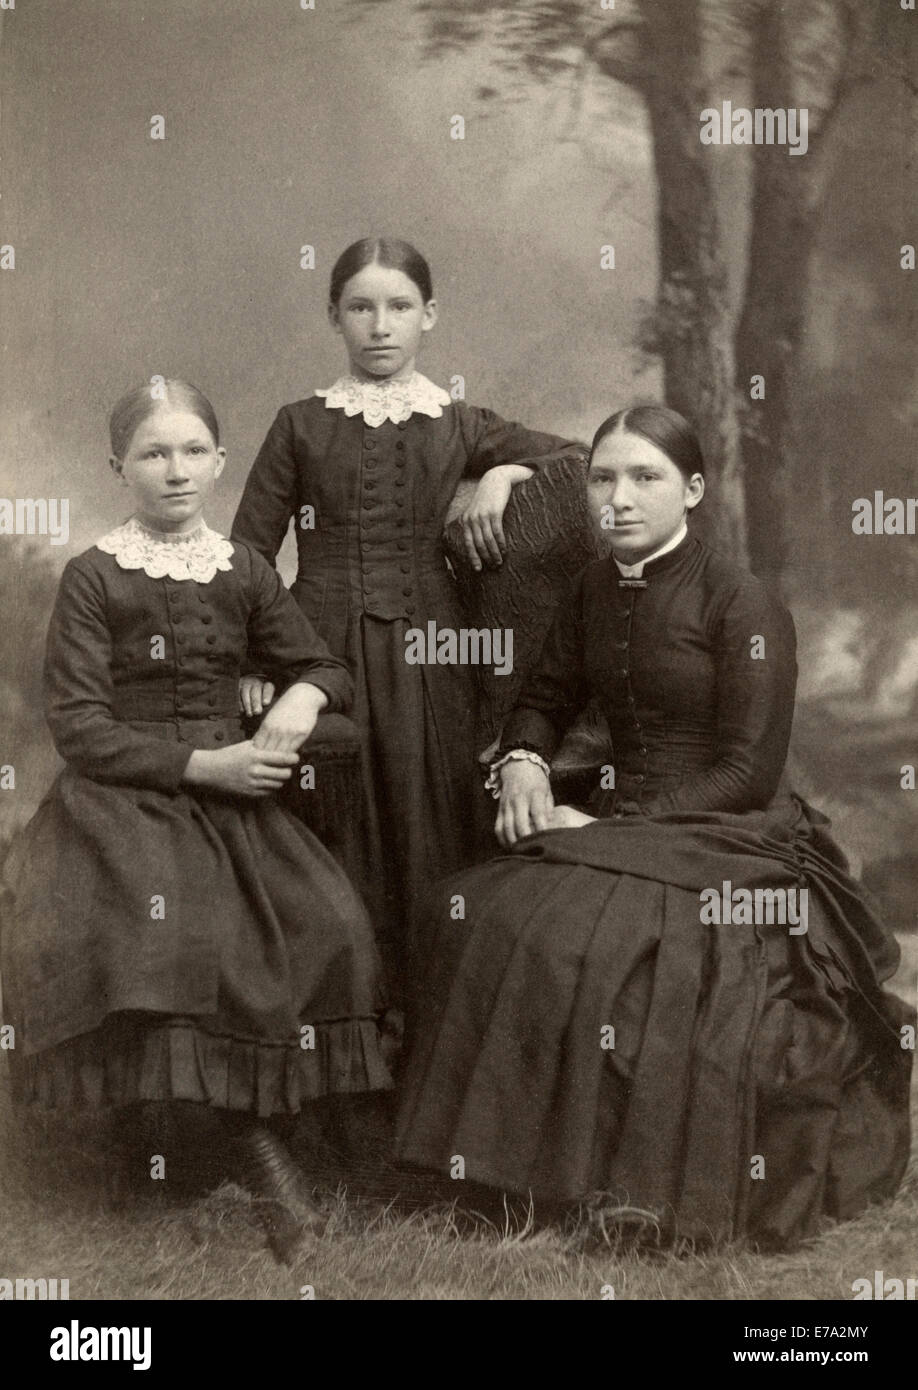 Adolescente avec deux jeunes filles avec des colliers en dentelle, Portrait, vers 1900 Banque D'Images